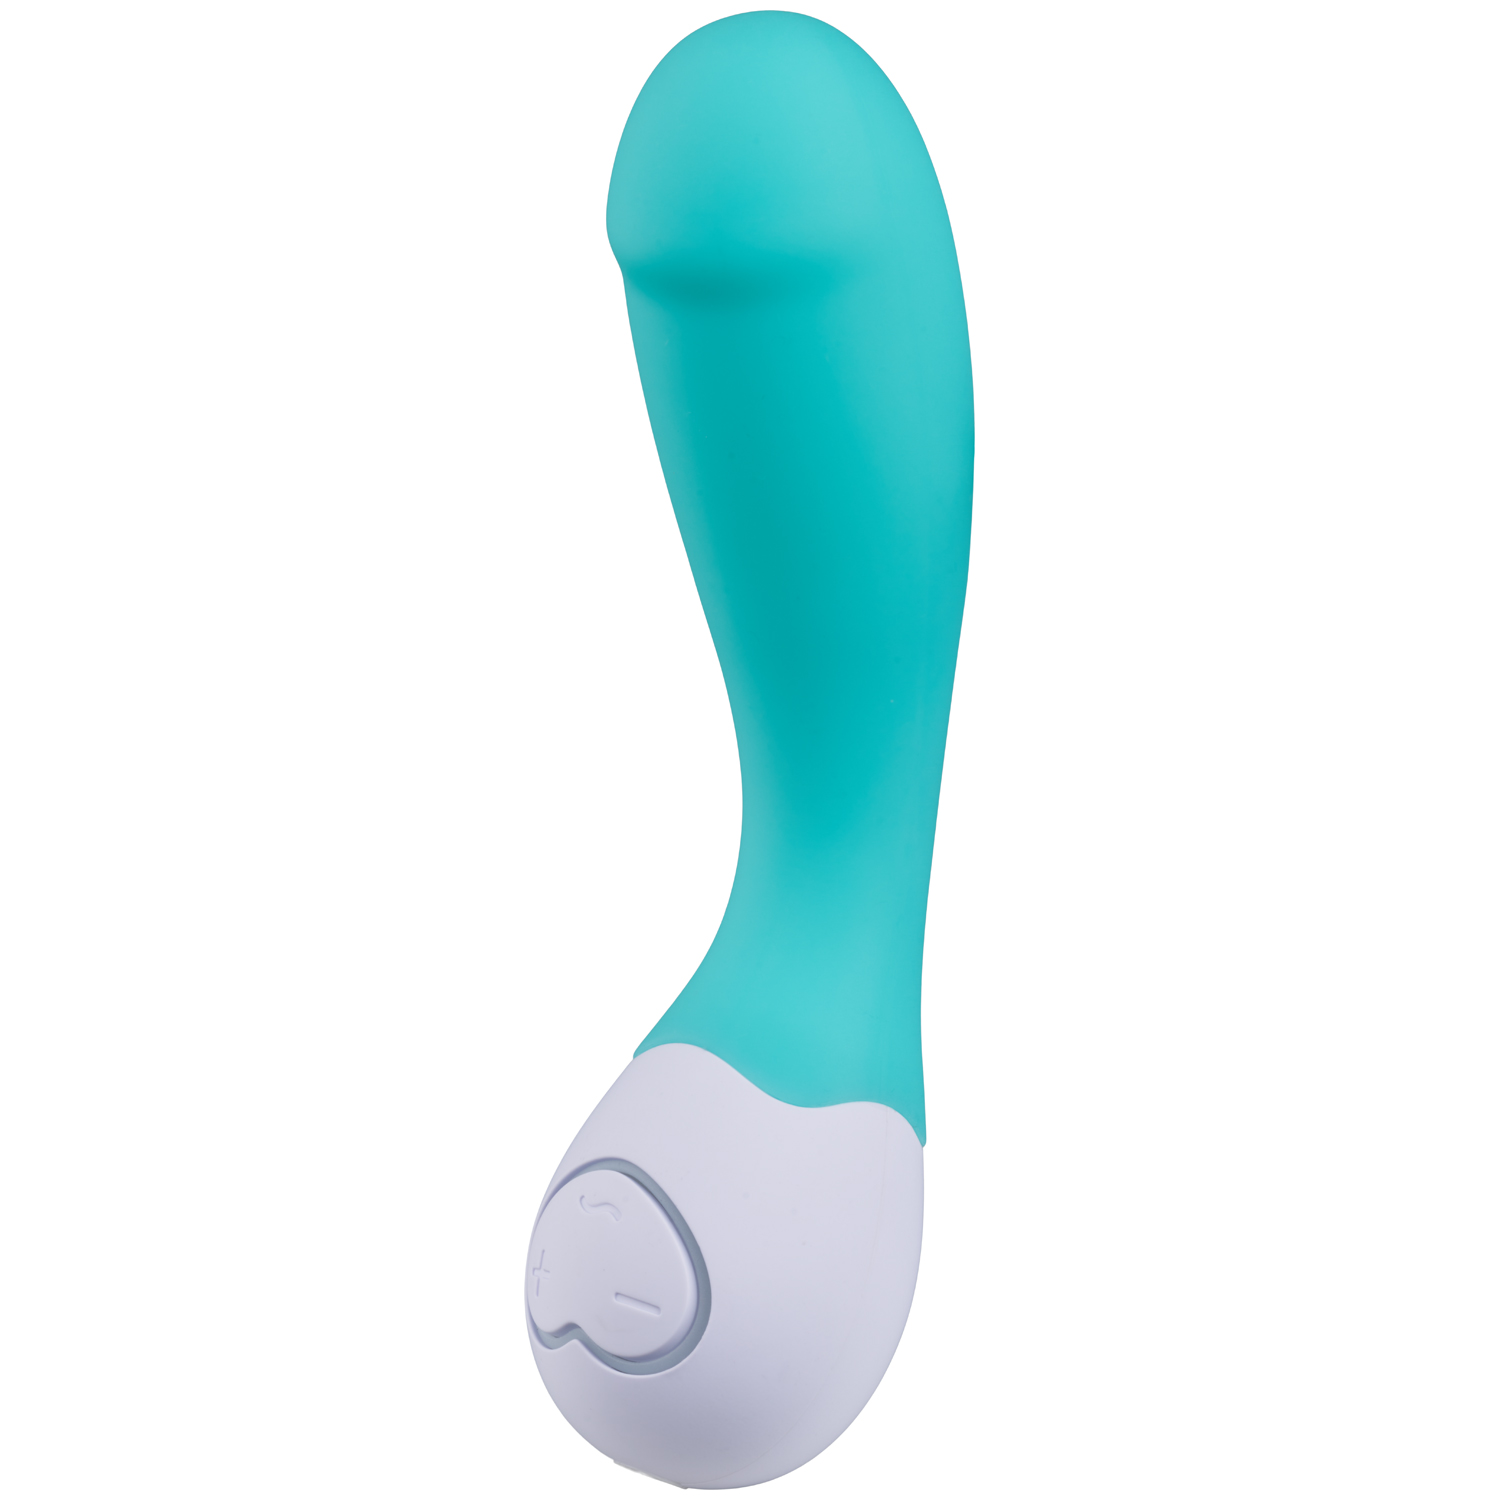 OhMiBod LoveLife Cuddle Mini G-punkts Vibrator - Turquoise